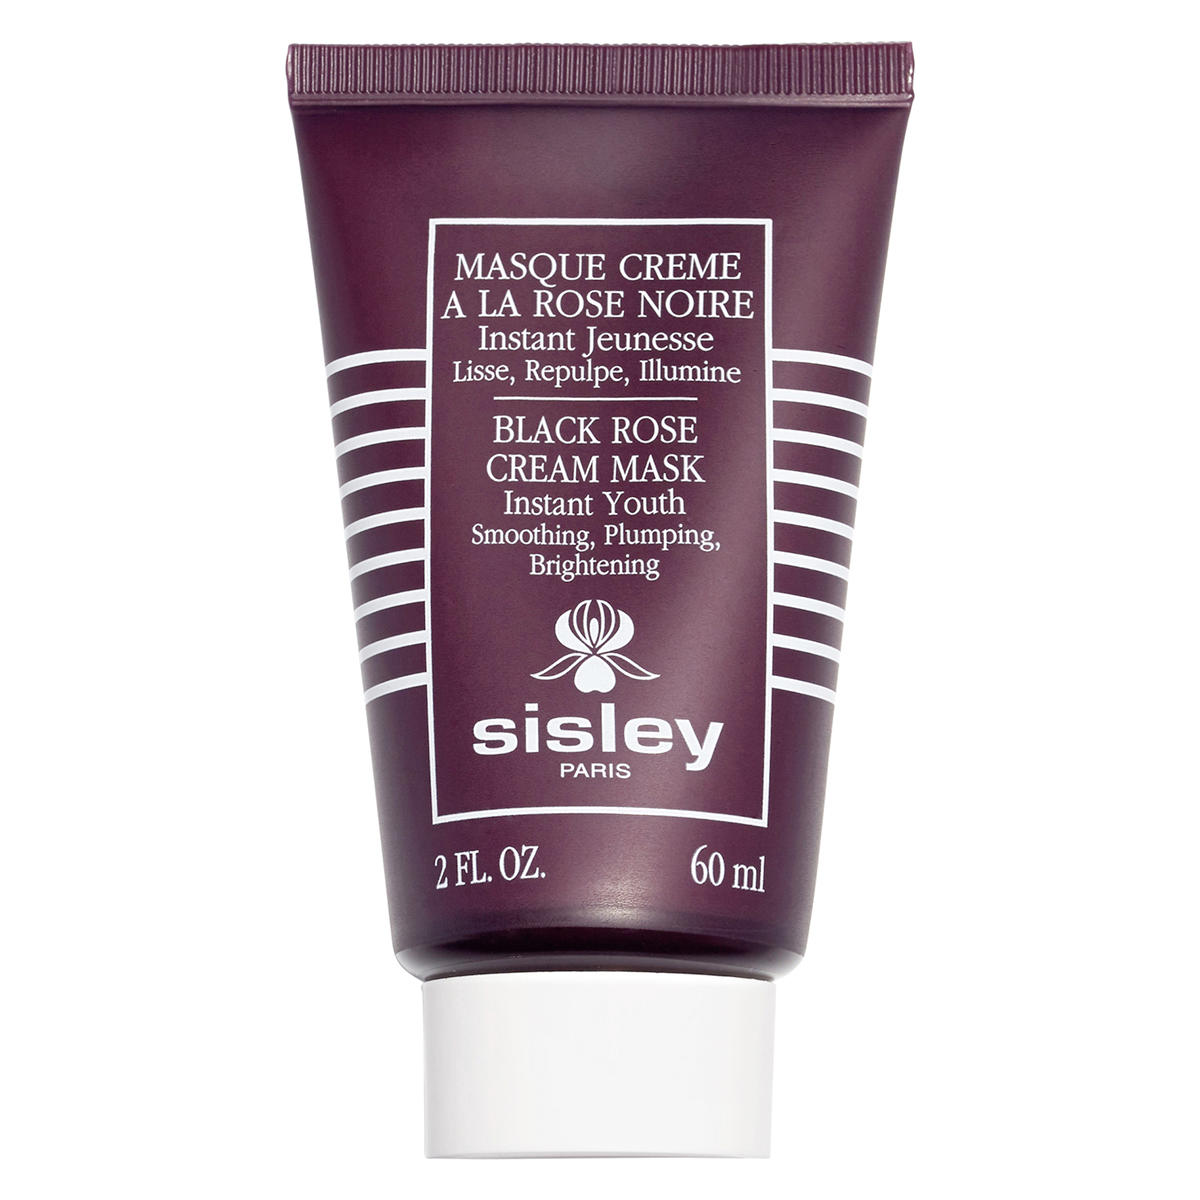 Sisley Paris Masque Crème à La Rose Noire 60 ml - 4